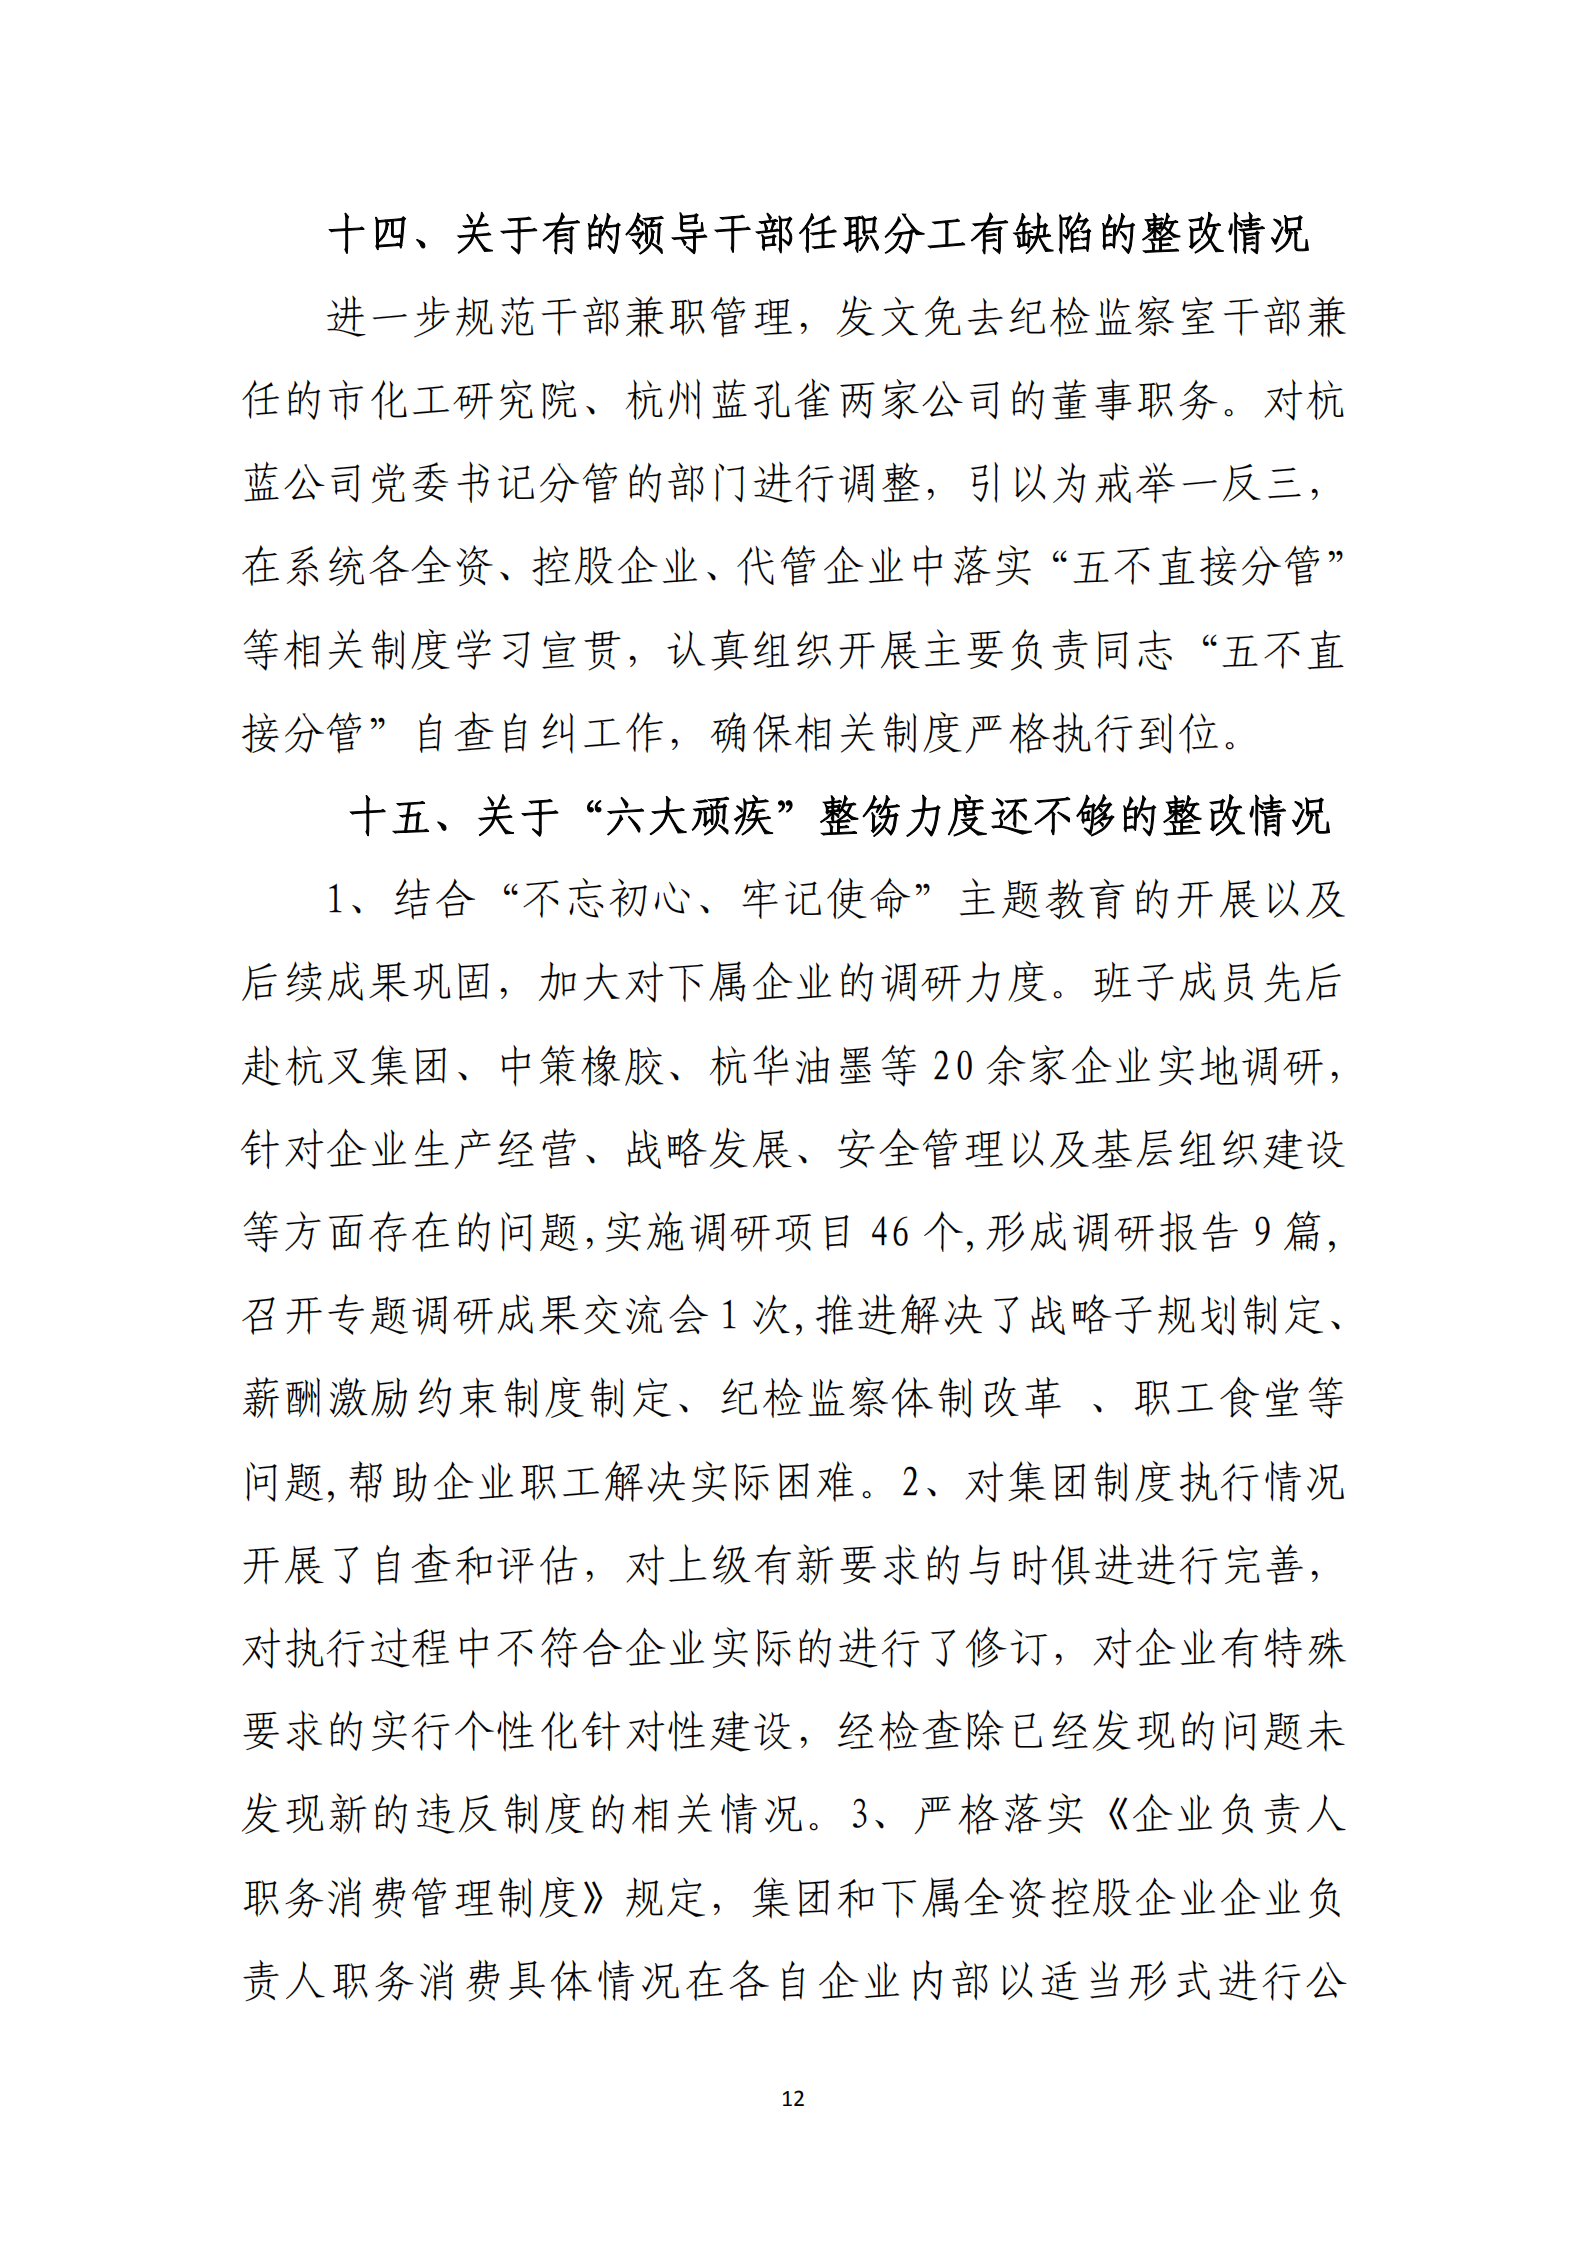 博乐体育网页【中国】有限公司党委关于巡察整改情况的通报_11.png